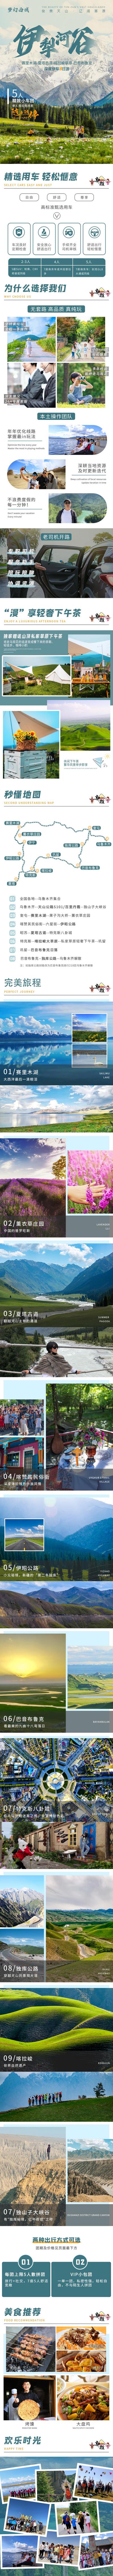 【南门网】广告 海报 新疆 伊犁 旅游 专题 旅行 专题 长图 小团 雪山